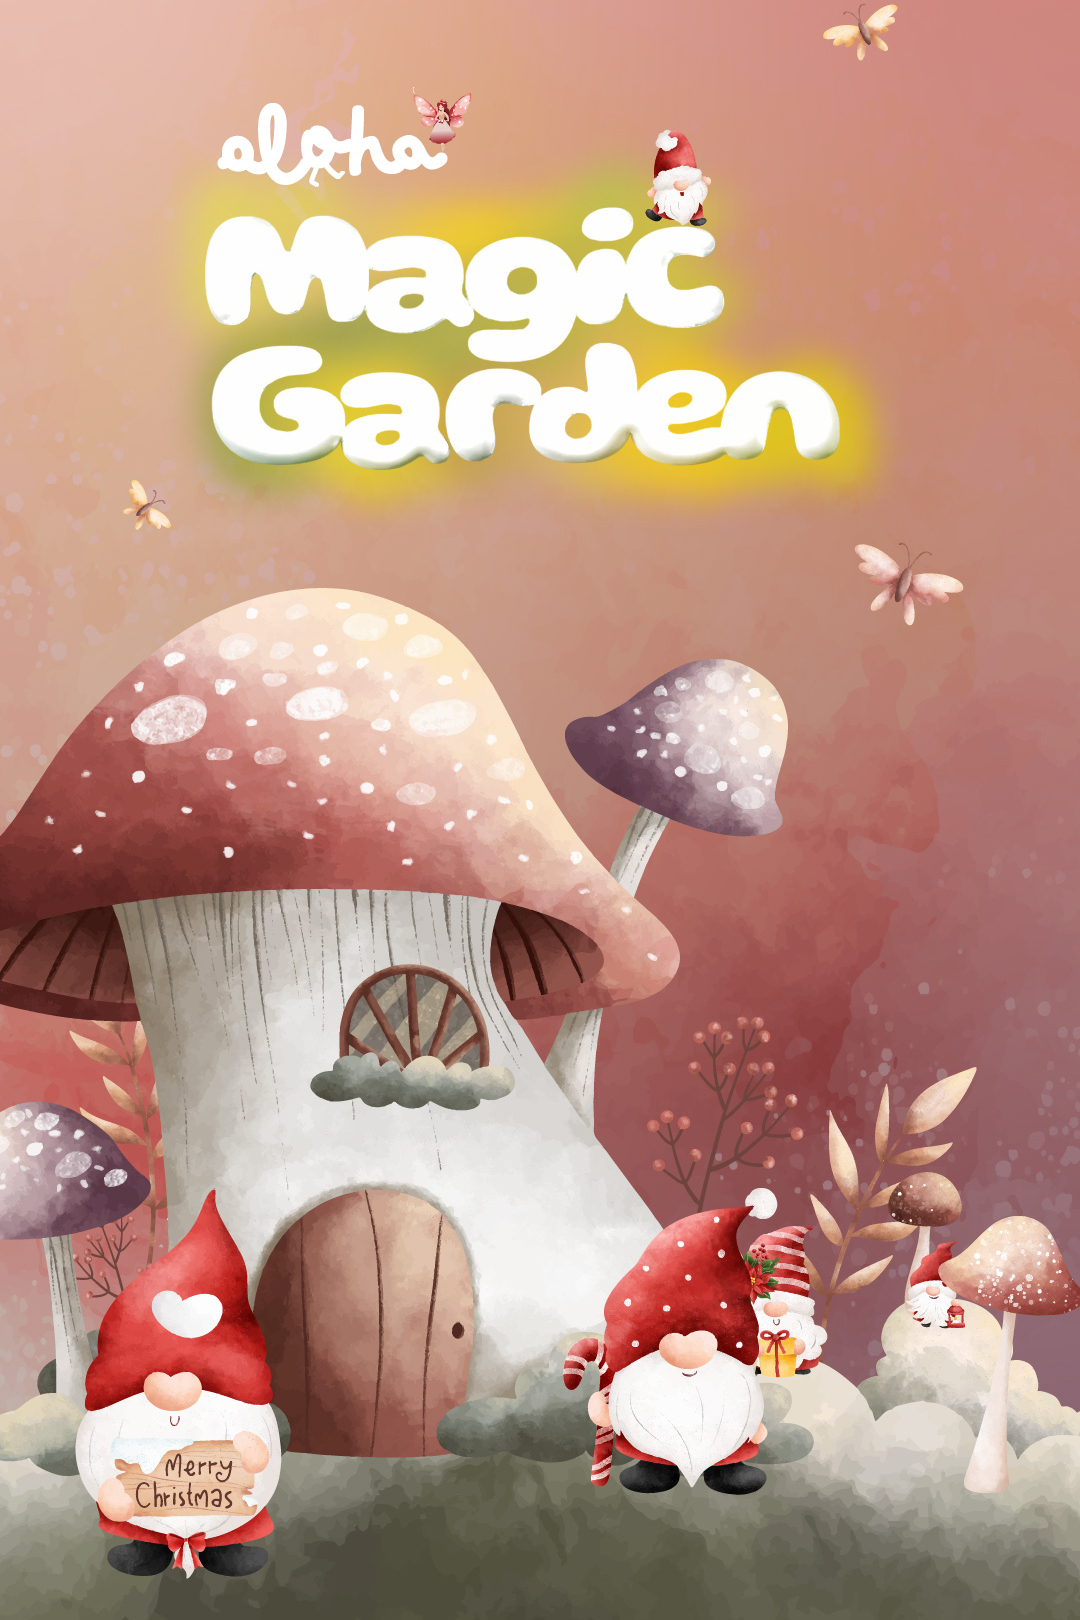 Aloha Magic Garden poster